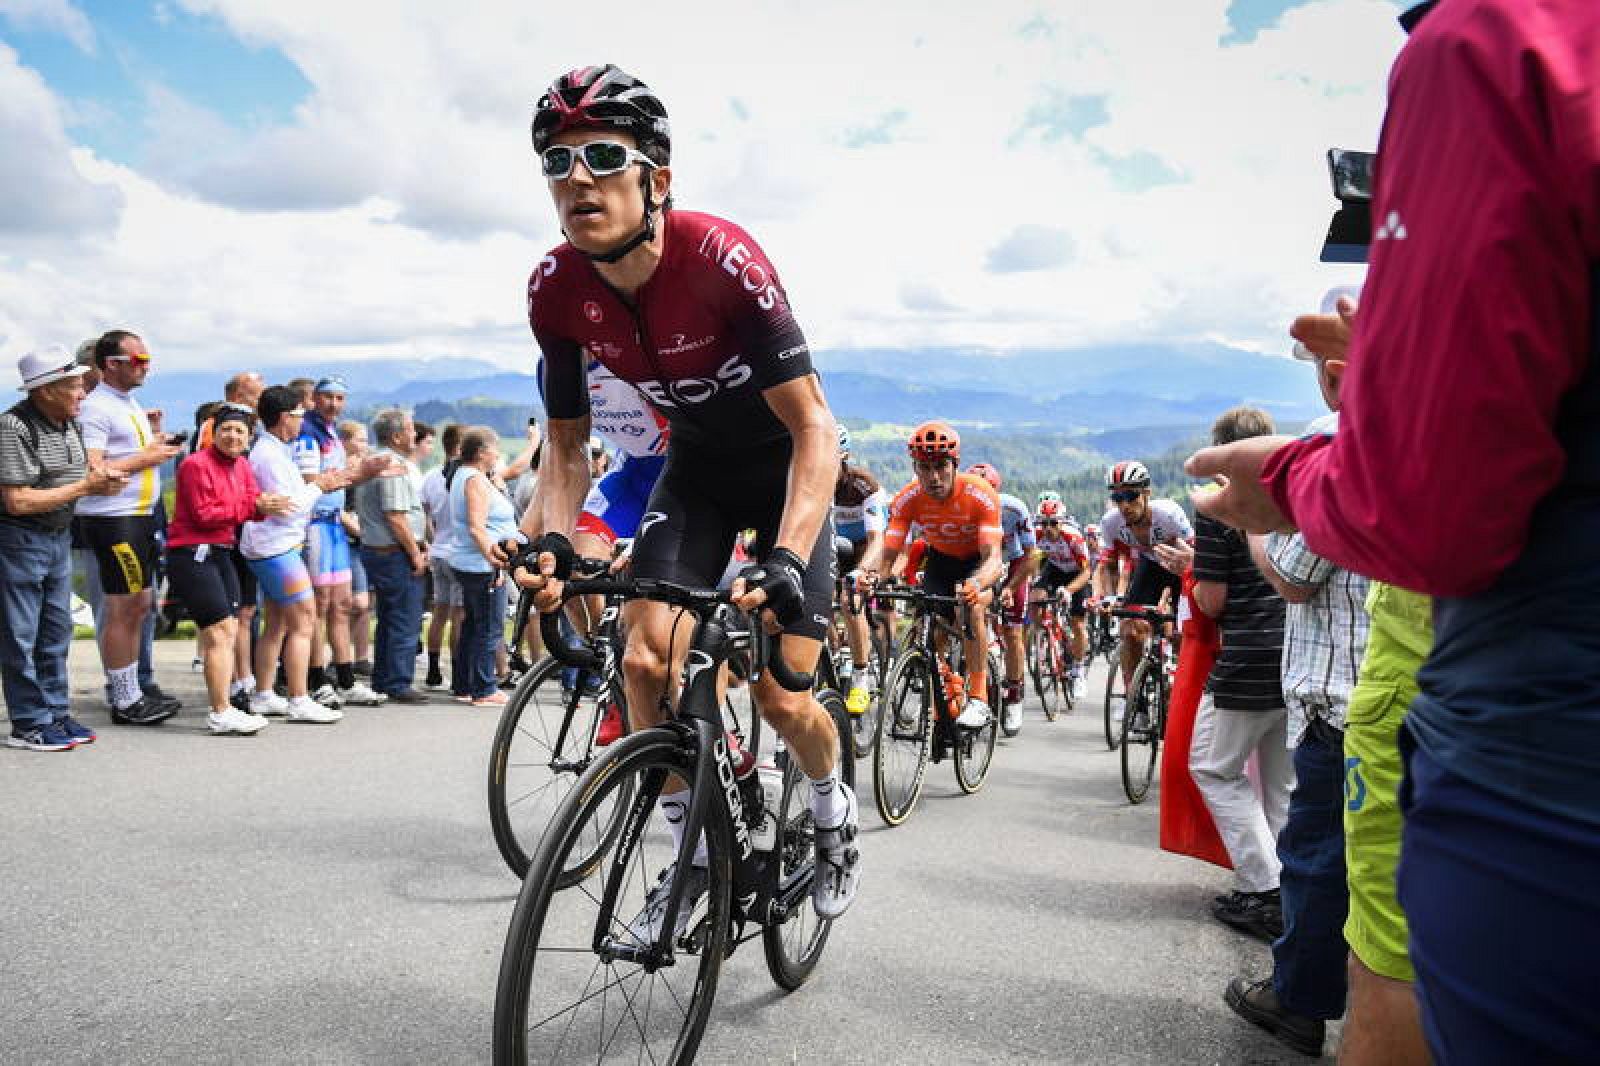 Imagen del ciclista galés durante el Tour de Suiza 2019.